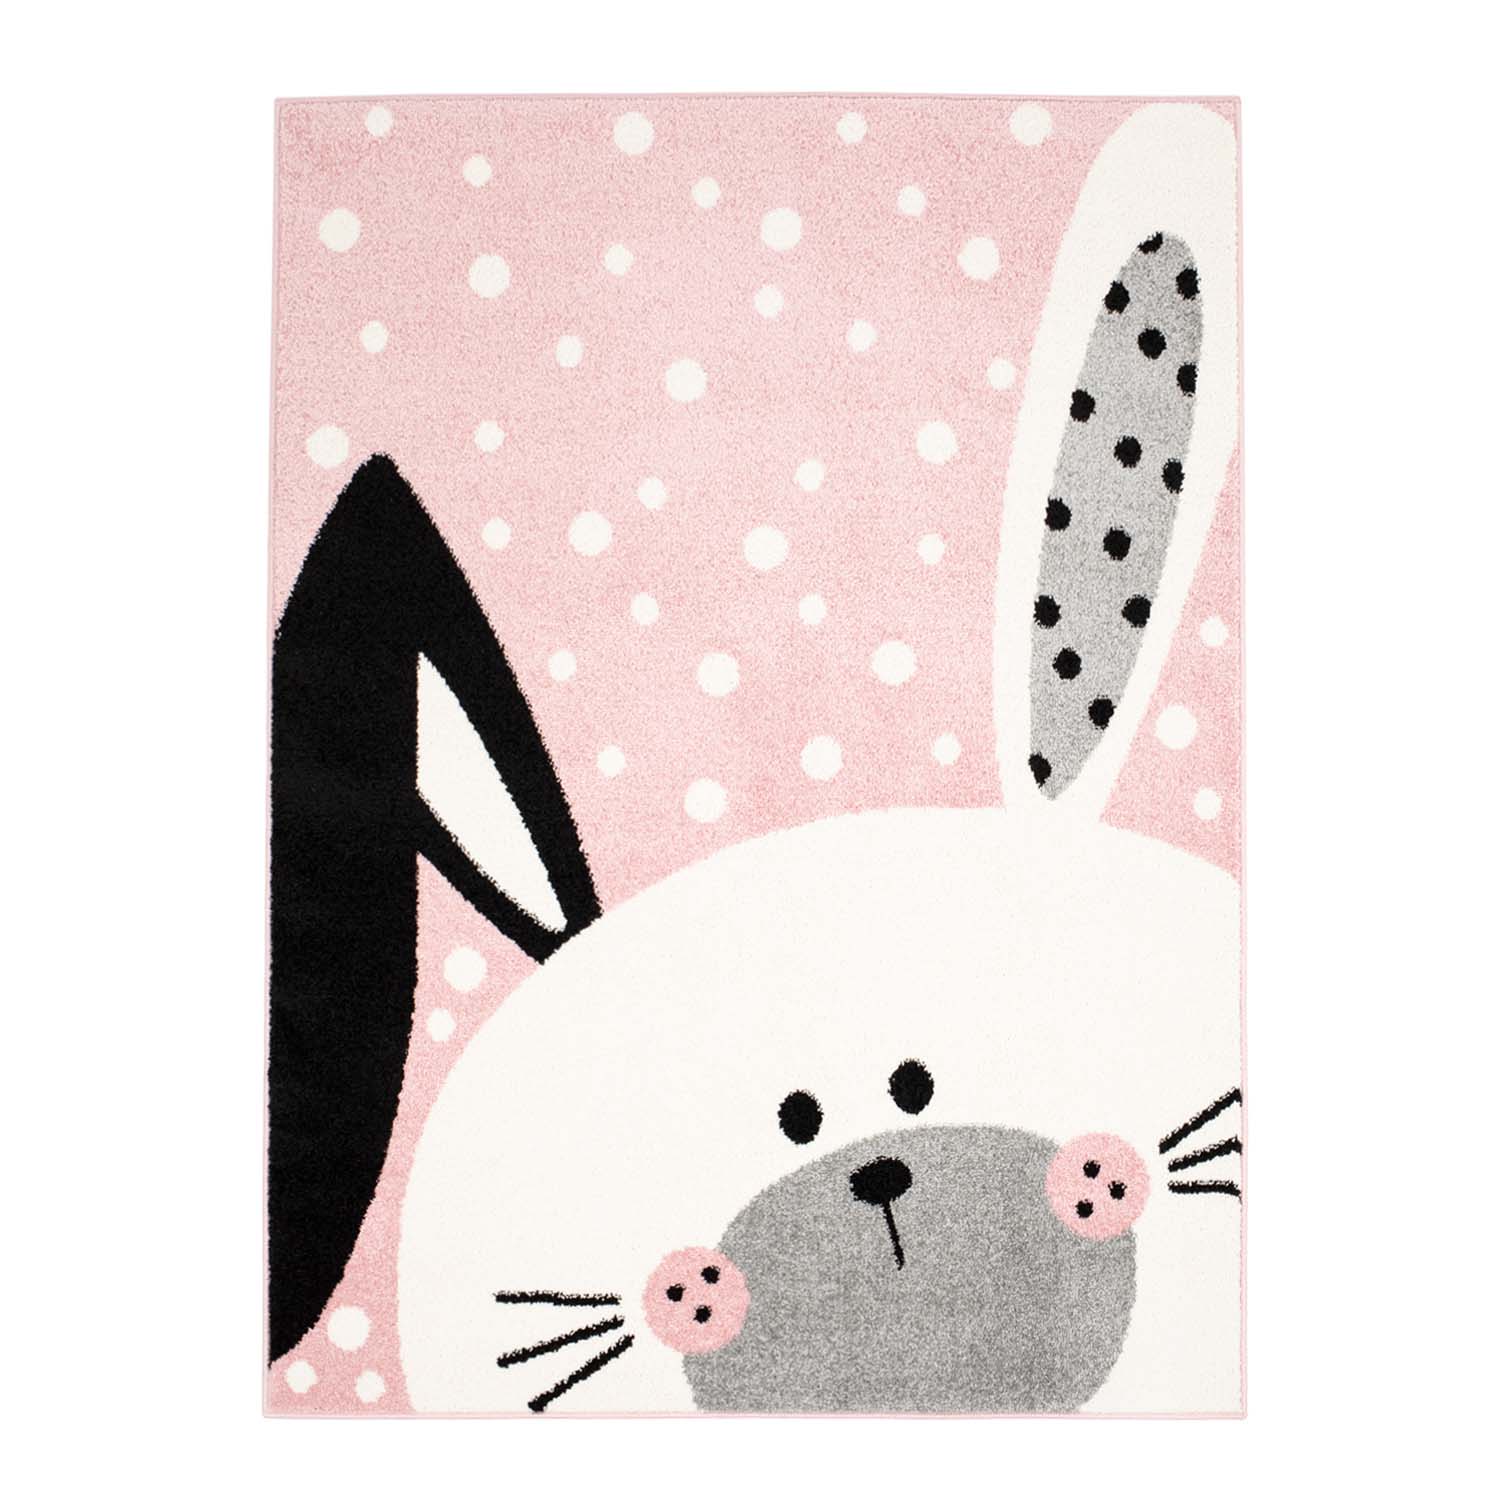 Teppiche für das Kinderzimmer
Kinderteppich
für junge Mädchen mit Tier Bubble Bunny rosa Hase